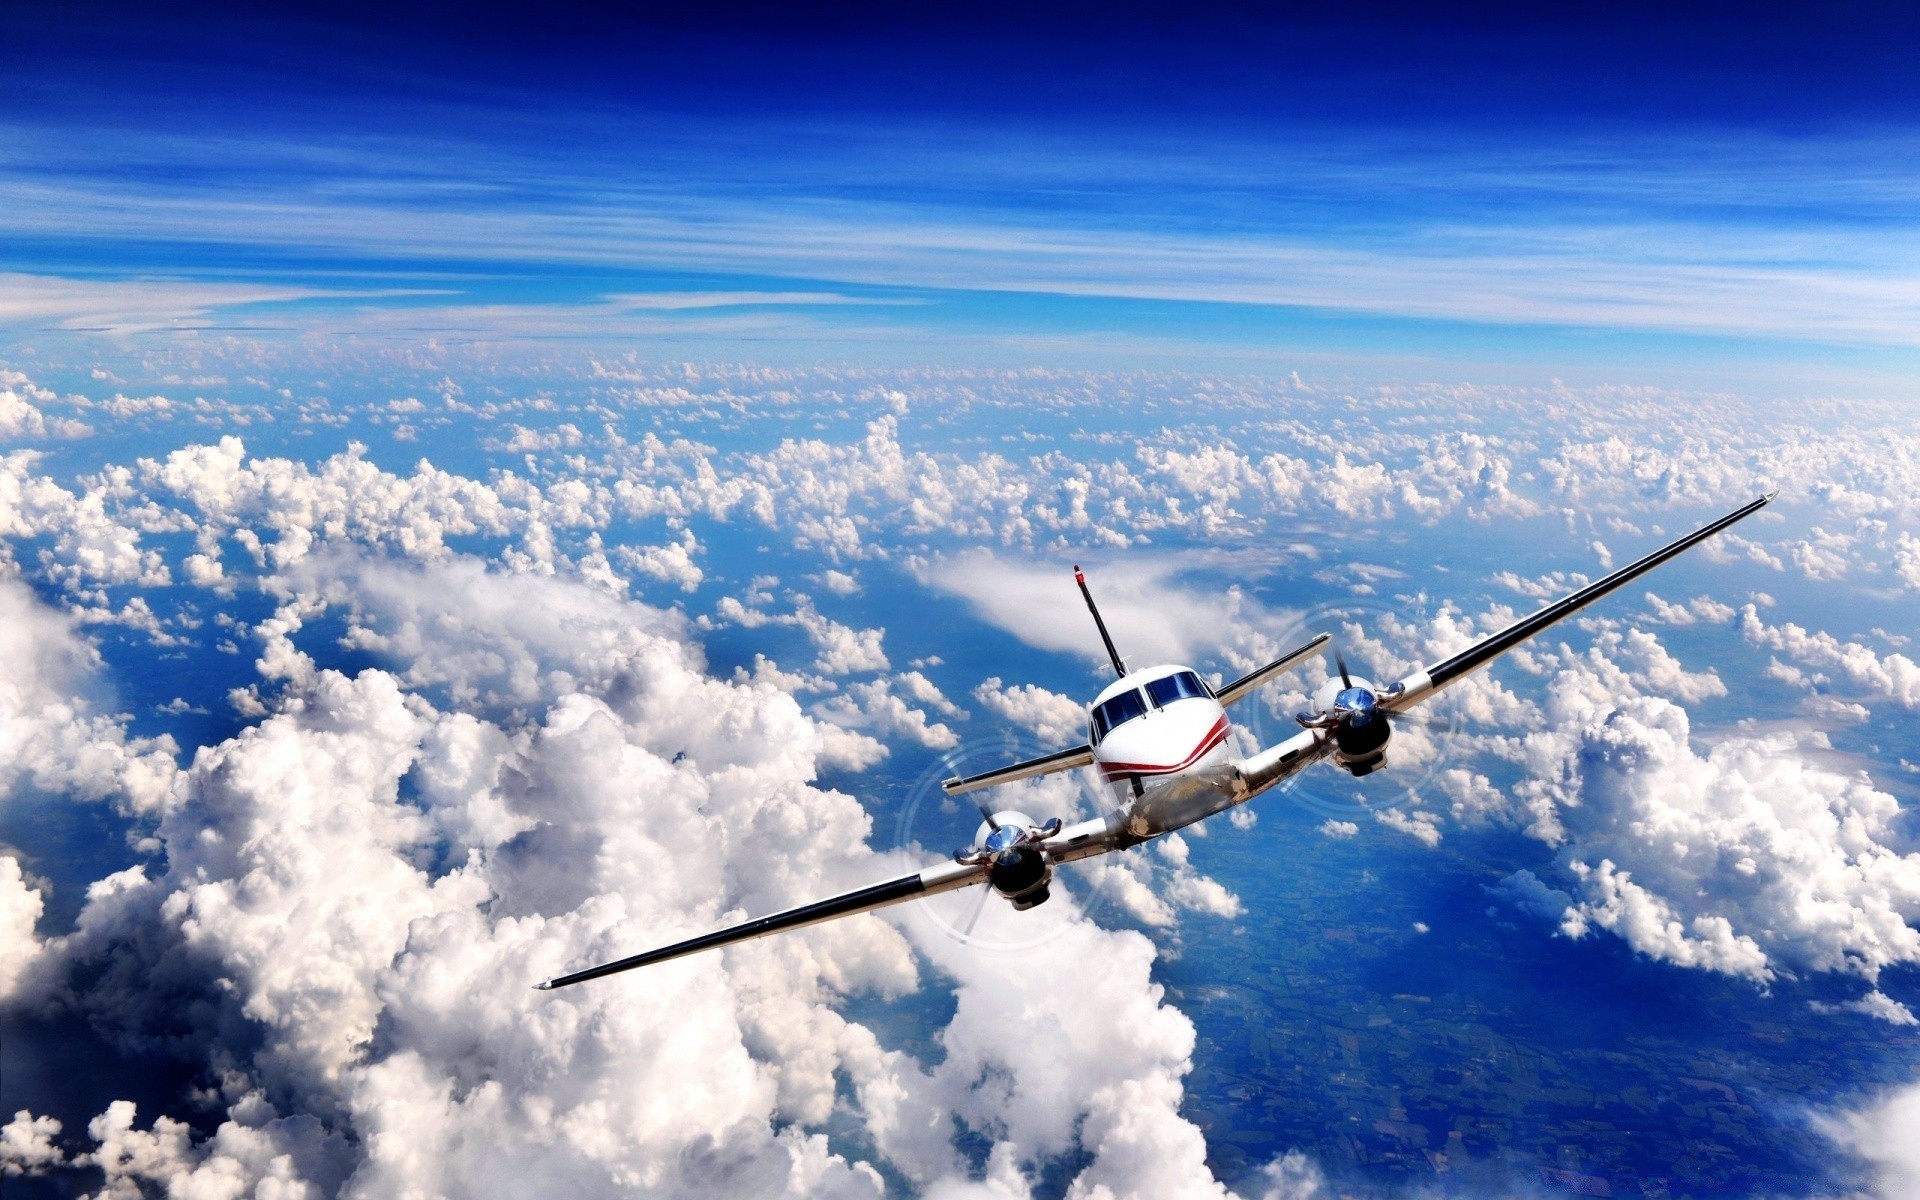 авиация самолет небо самолет воздуха рейс летать облако транспортная система самолет погода путешествия на открытом воздухе авиалайнер крыло высокая двигатель